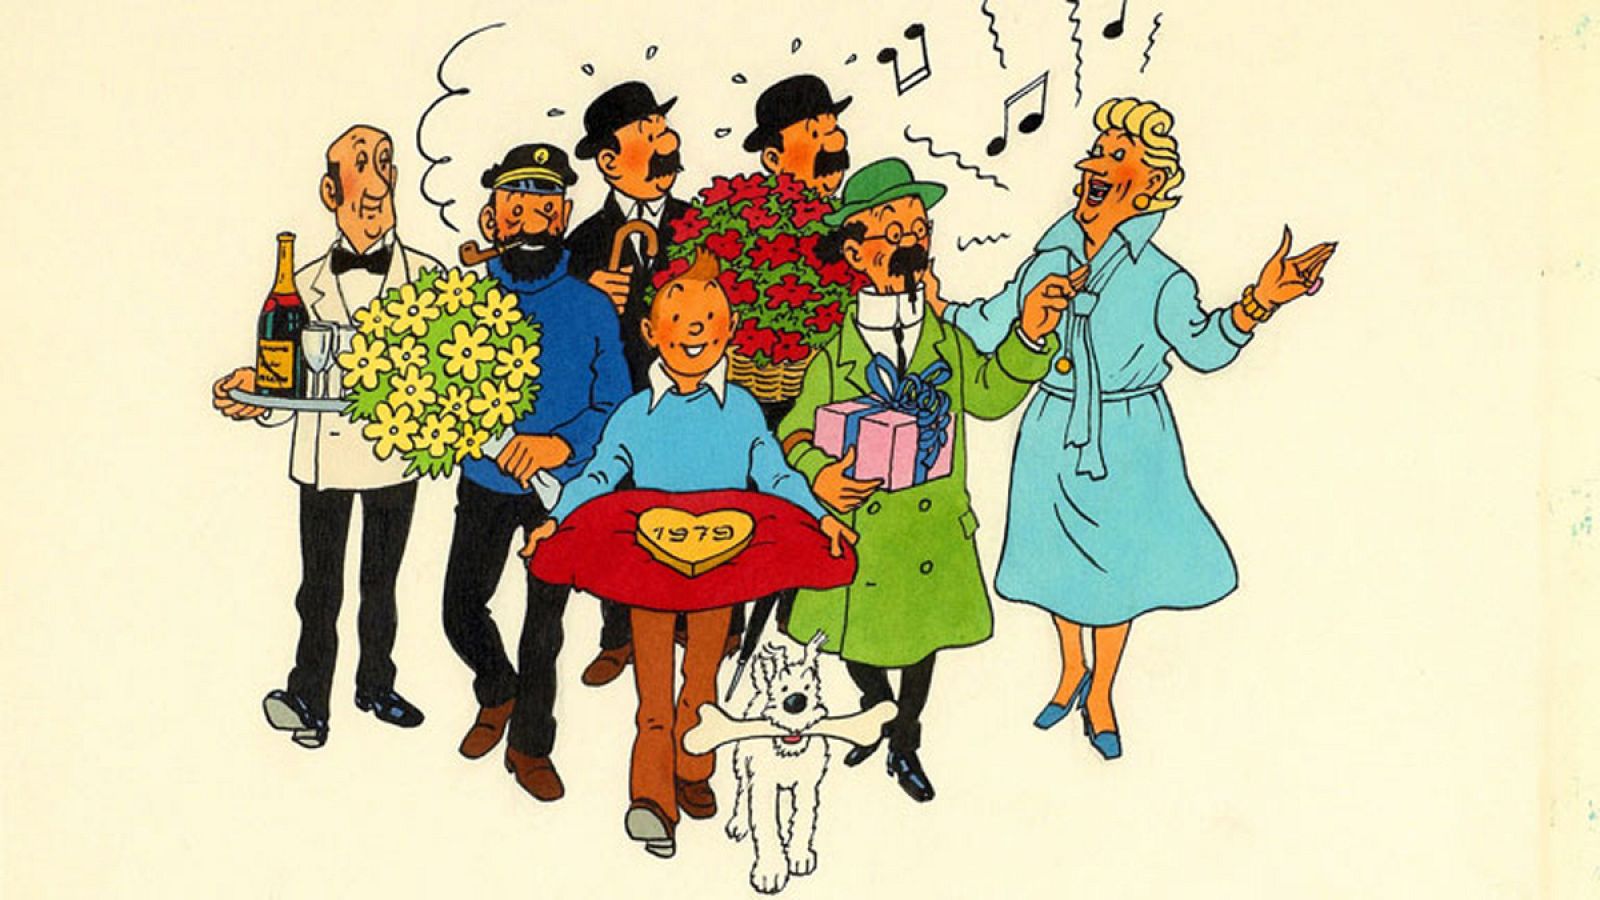 Ilustración e Tintin, facilitada por Herge/Moulinsart